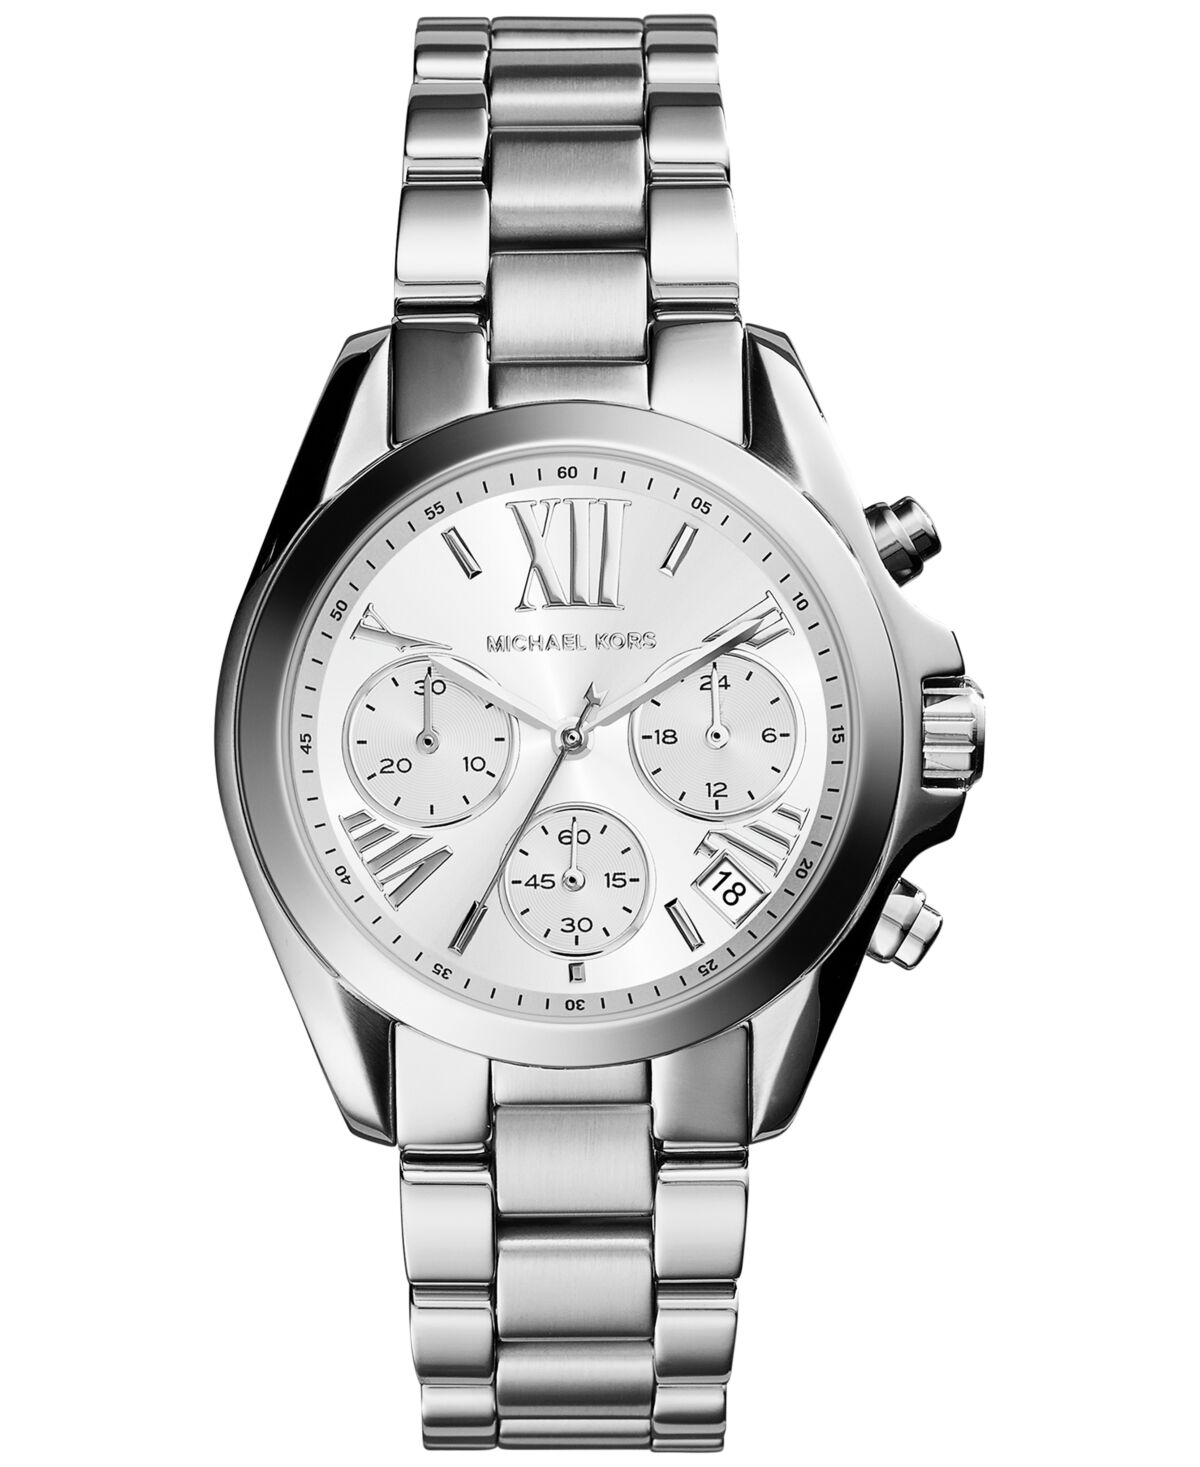 Michael Kors Women's Bradshaw Silver-Tone Stainless Steel Bracelet Watch 36mm